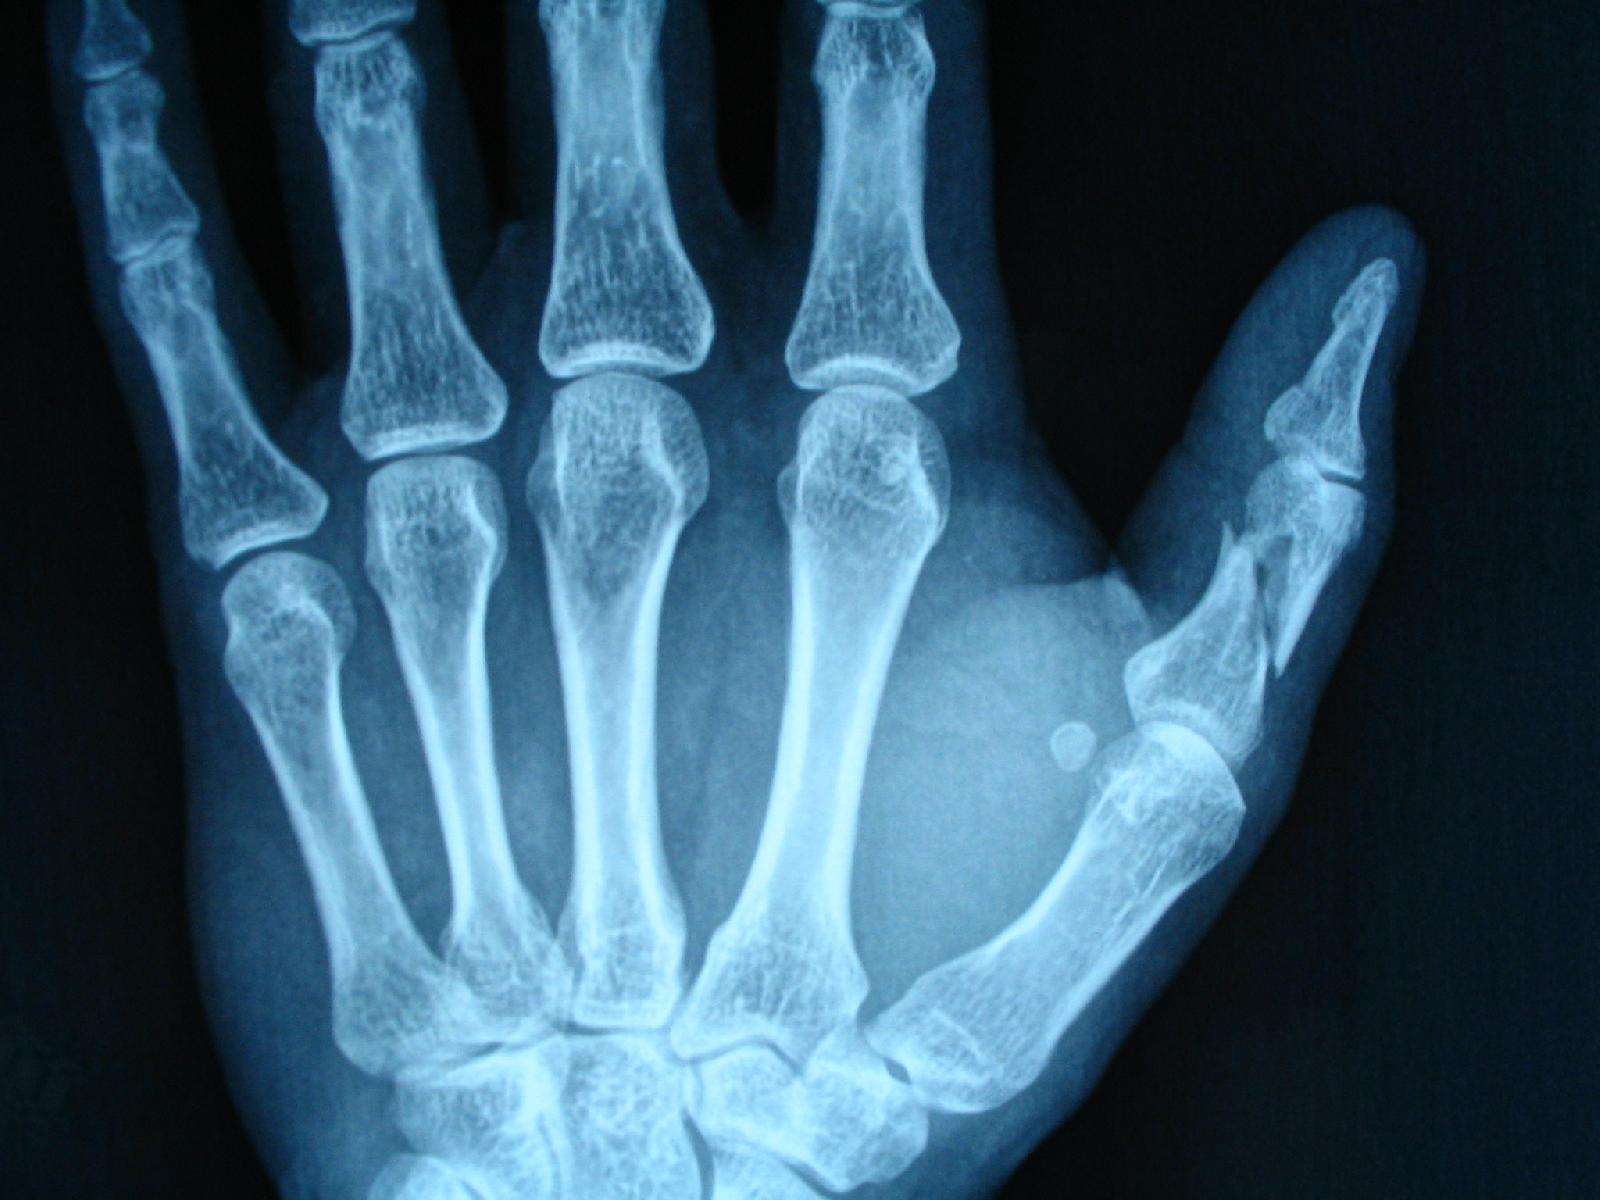 见拇指近节呈 粉碎性骨折 ,一大的斜形骨折线将拇指